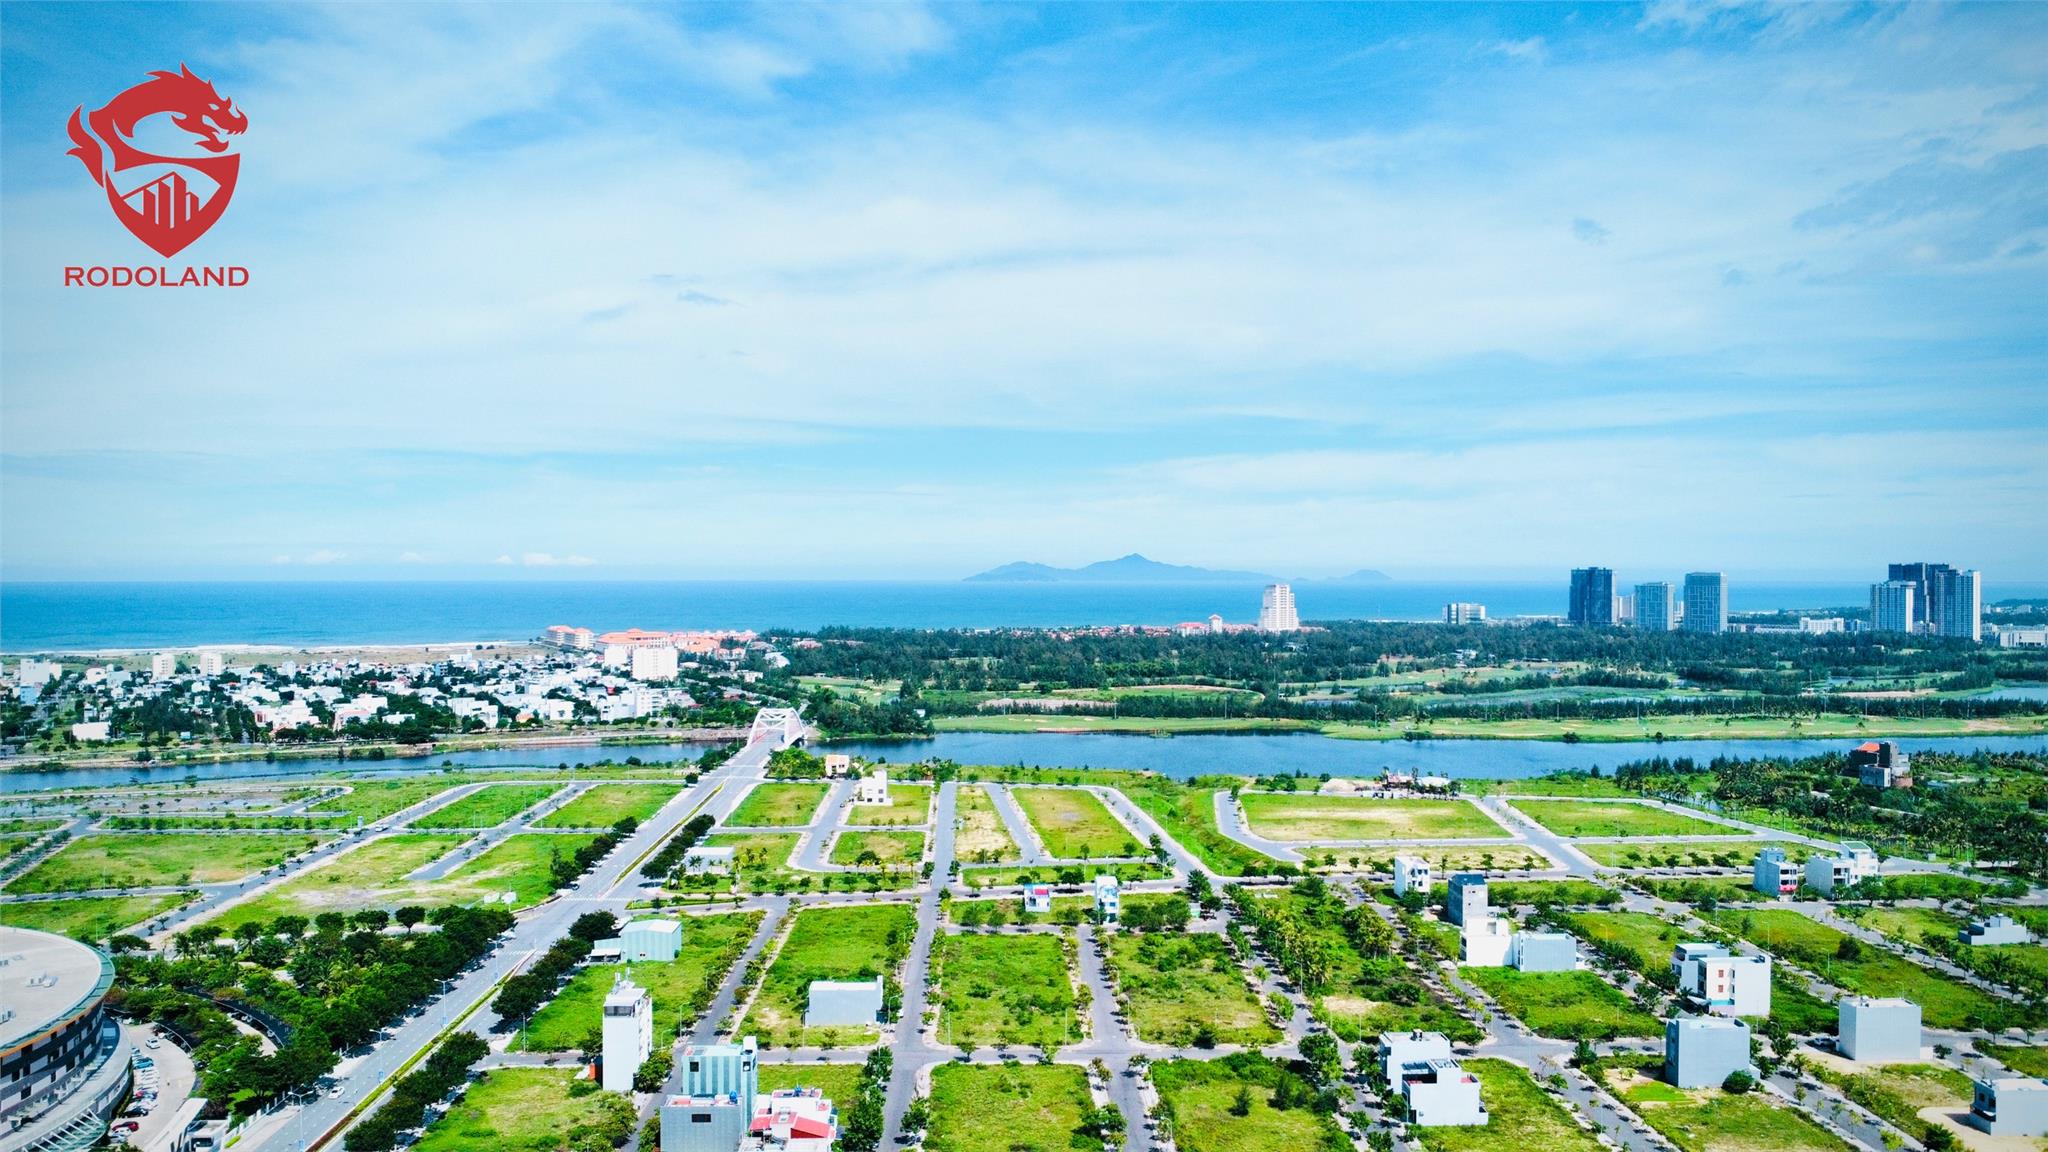 GIÁ RẺ: Bán đất 90m2 FPT Đà Nẵng giá rẻ nhất thị trường. Liên hệ: 0905.31.89.88 2